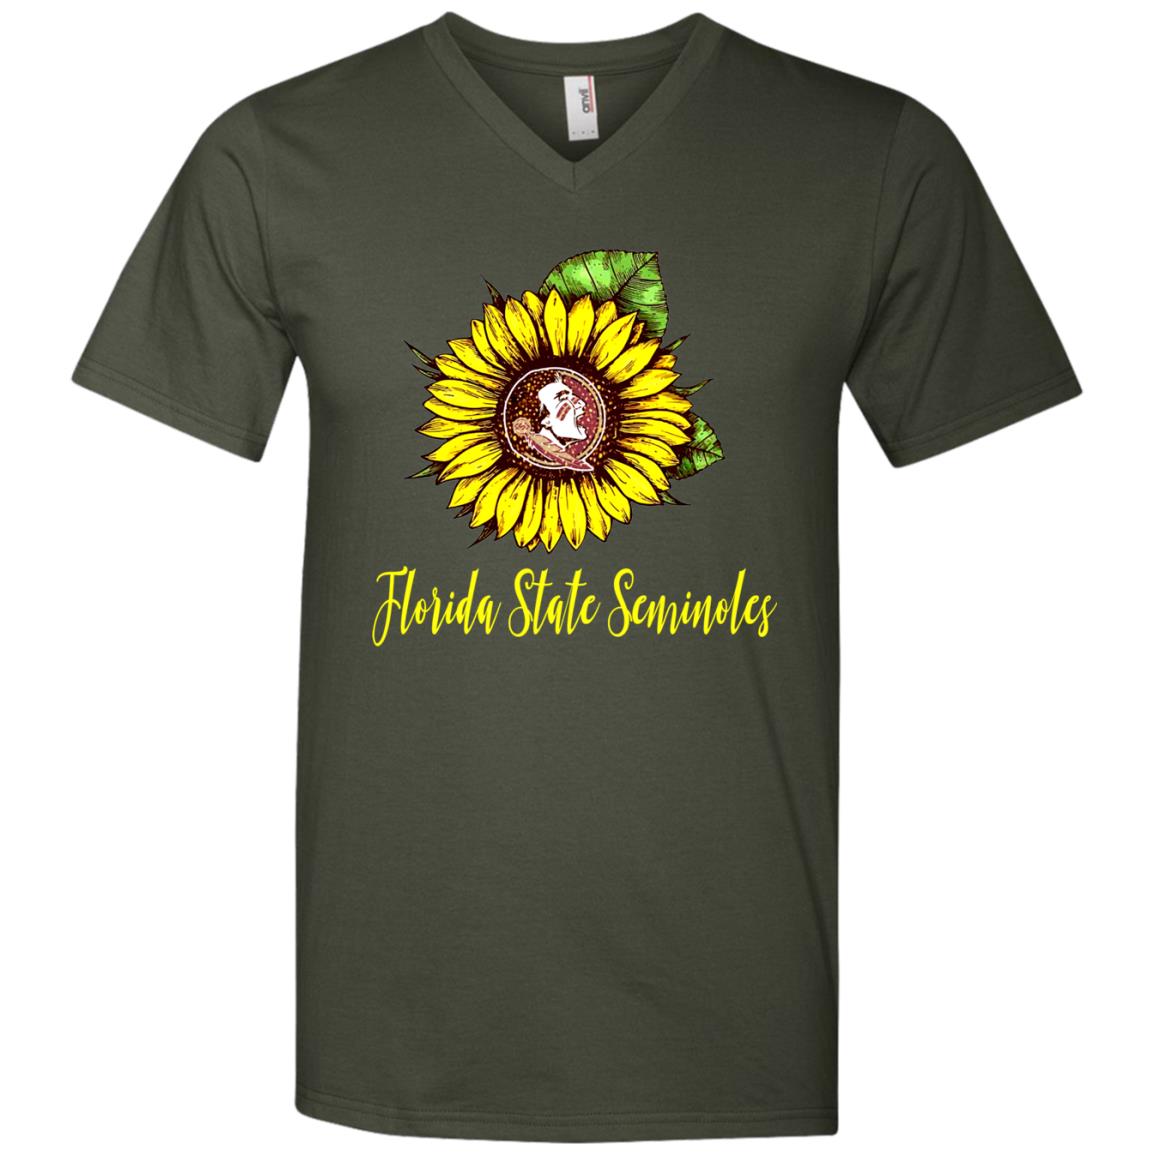 Florida State Seminoles Sunflower Love T-shirt